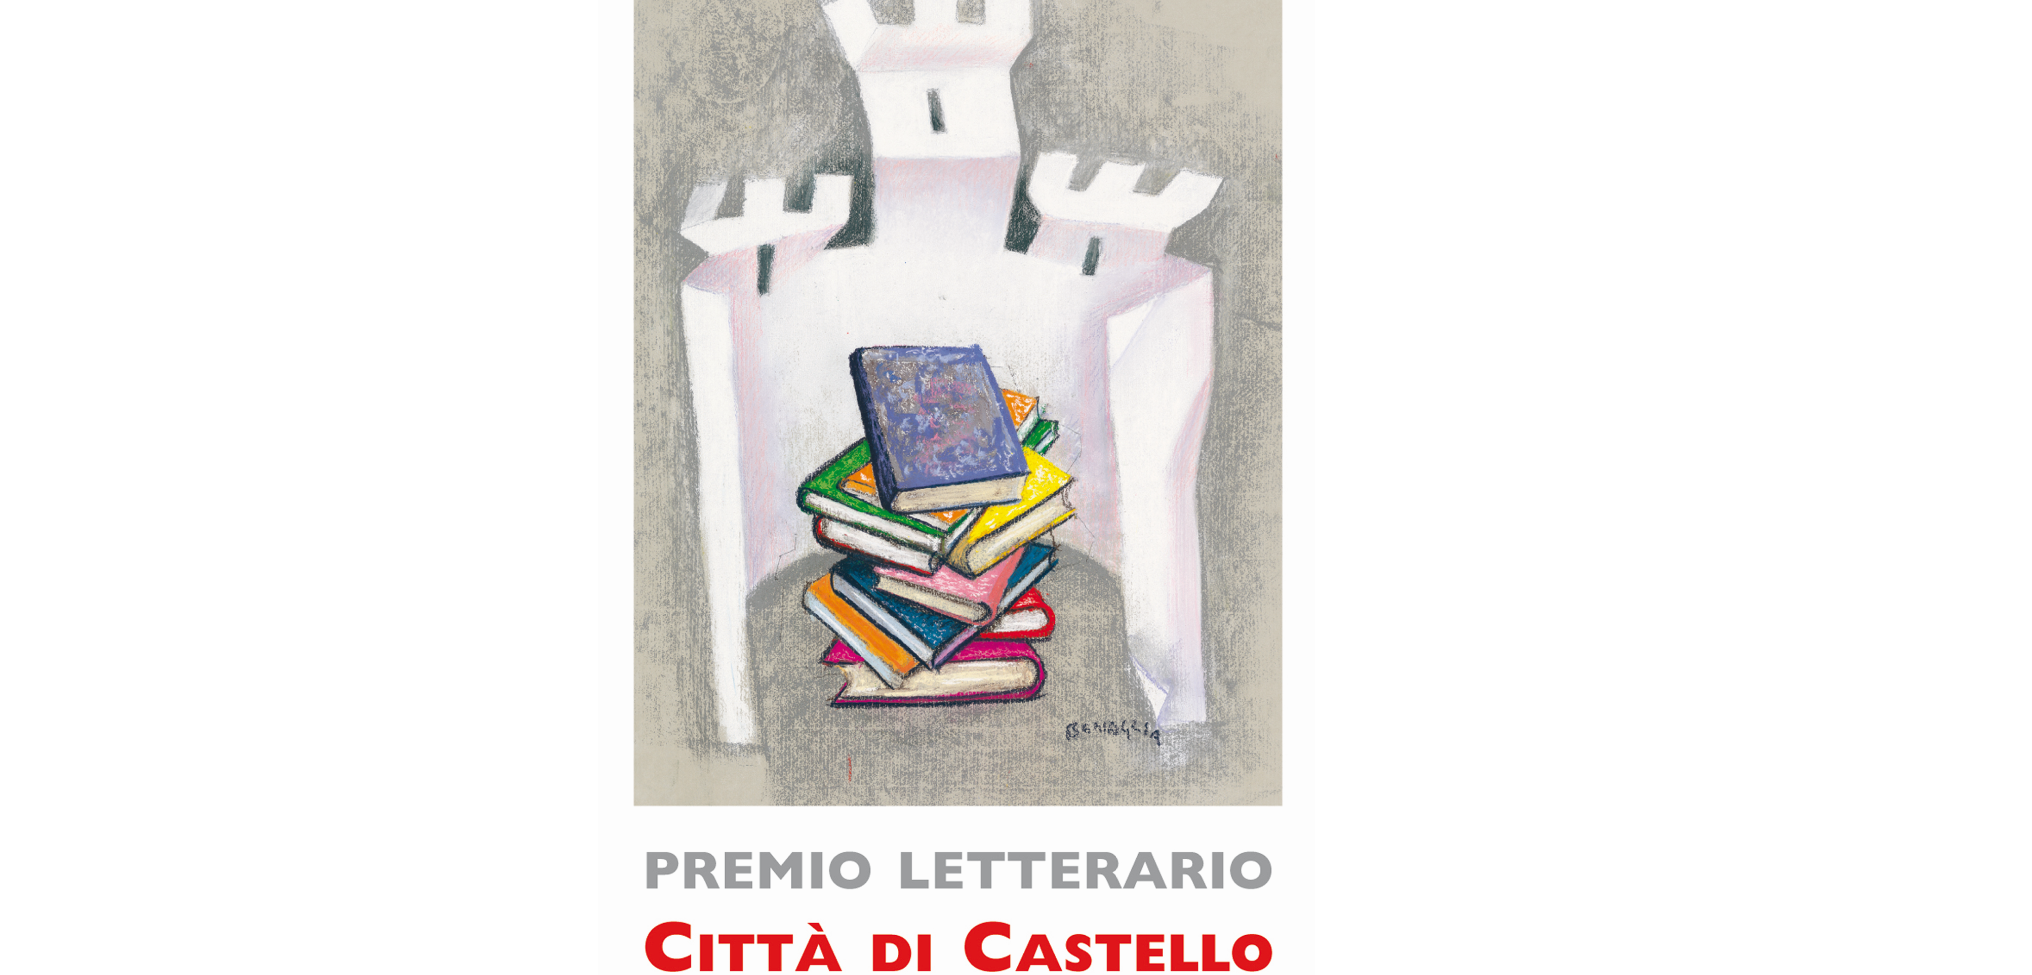 Premio Letterario “Città di Castello” XV Edizione 2021